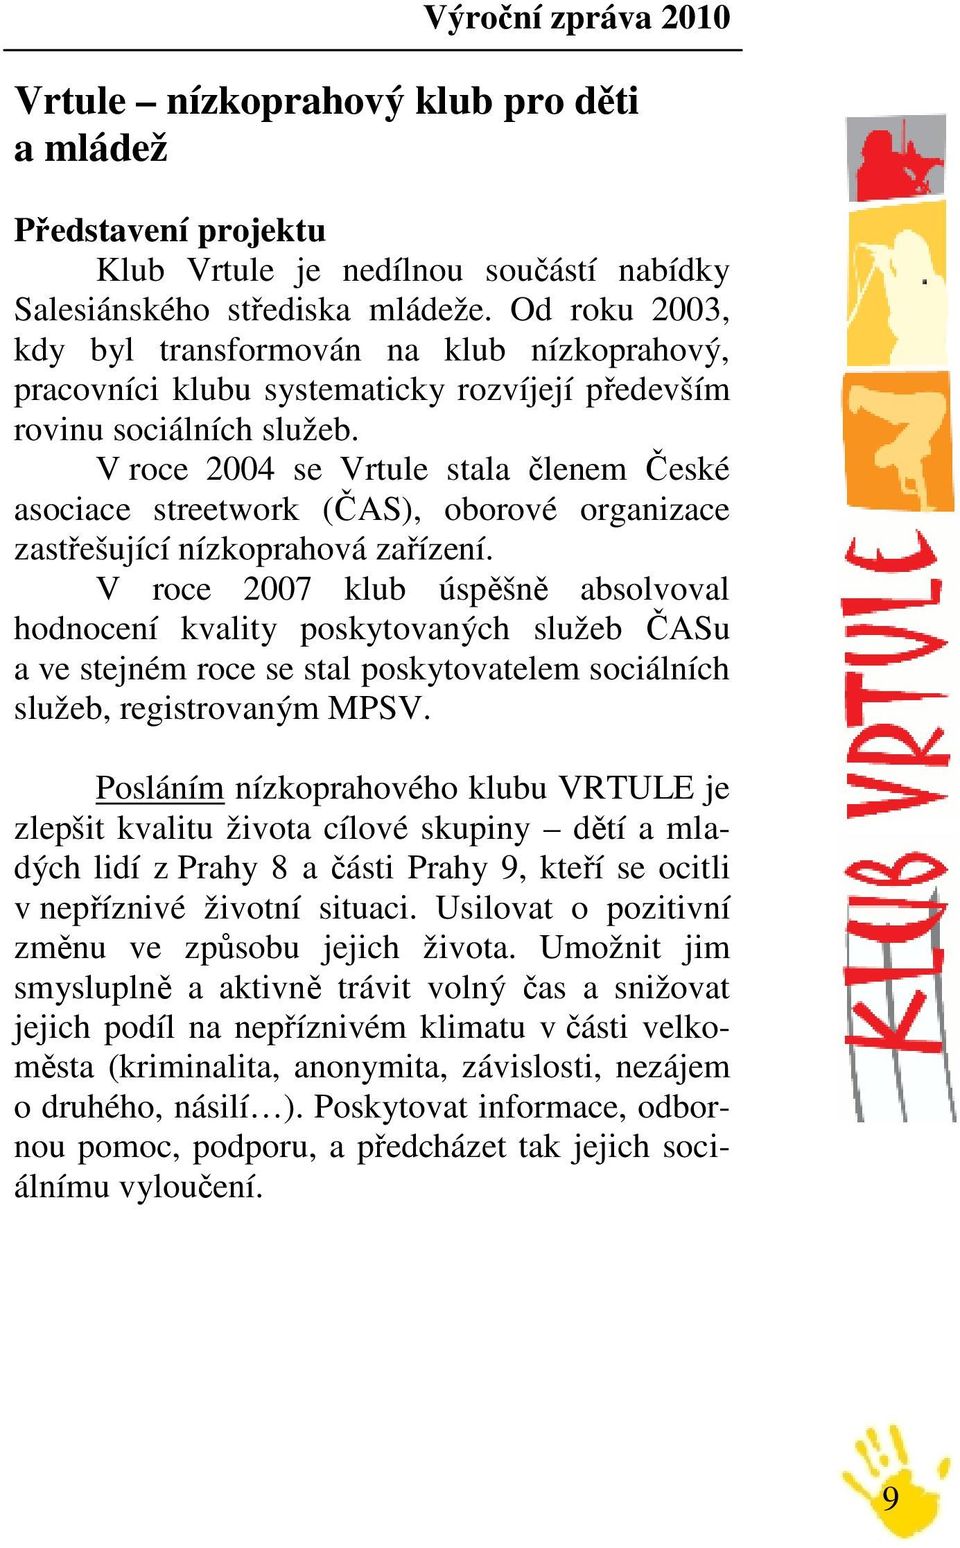 V roce 2004 se Vrtule stala členem České asociace streetwork (ČAS), oborové organizace zastřešující nízkoprahová zařízení.